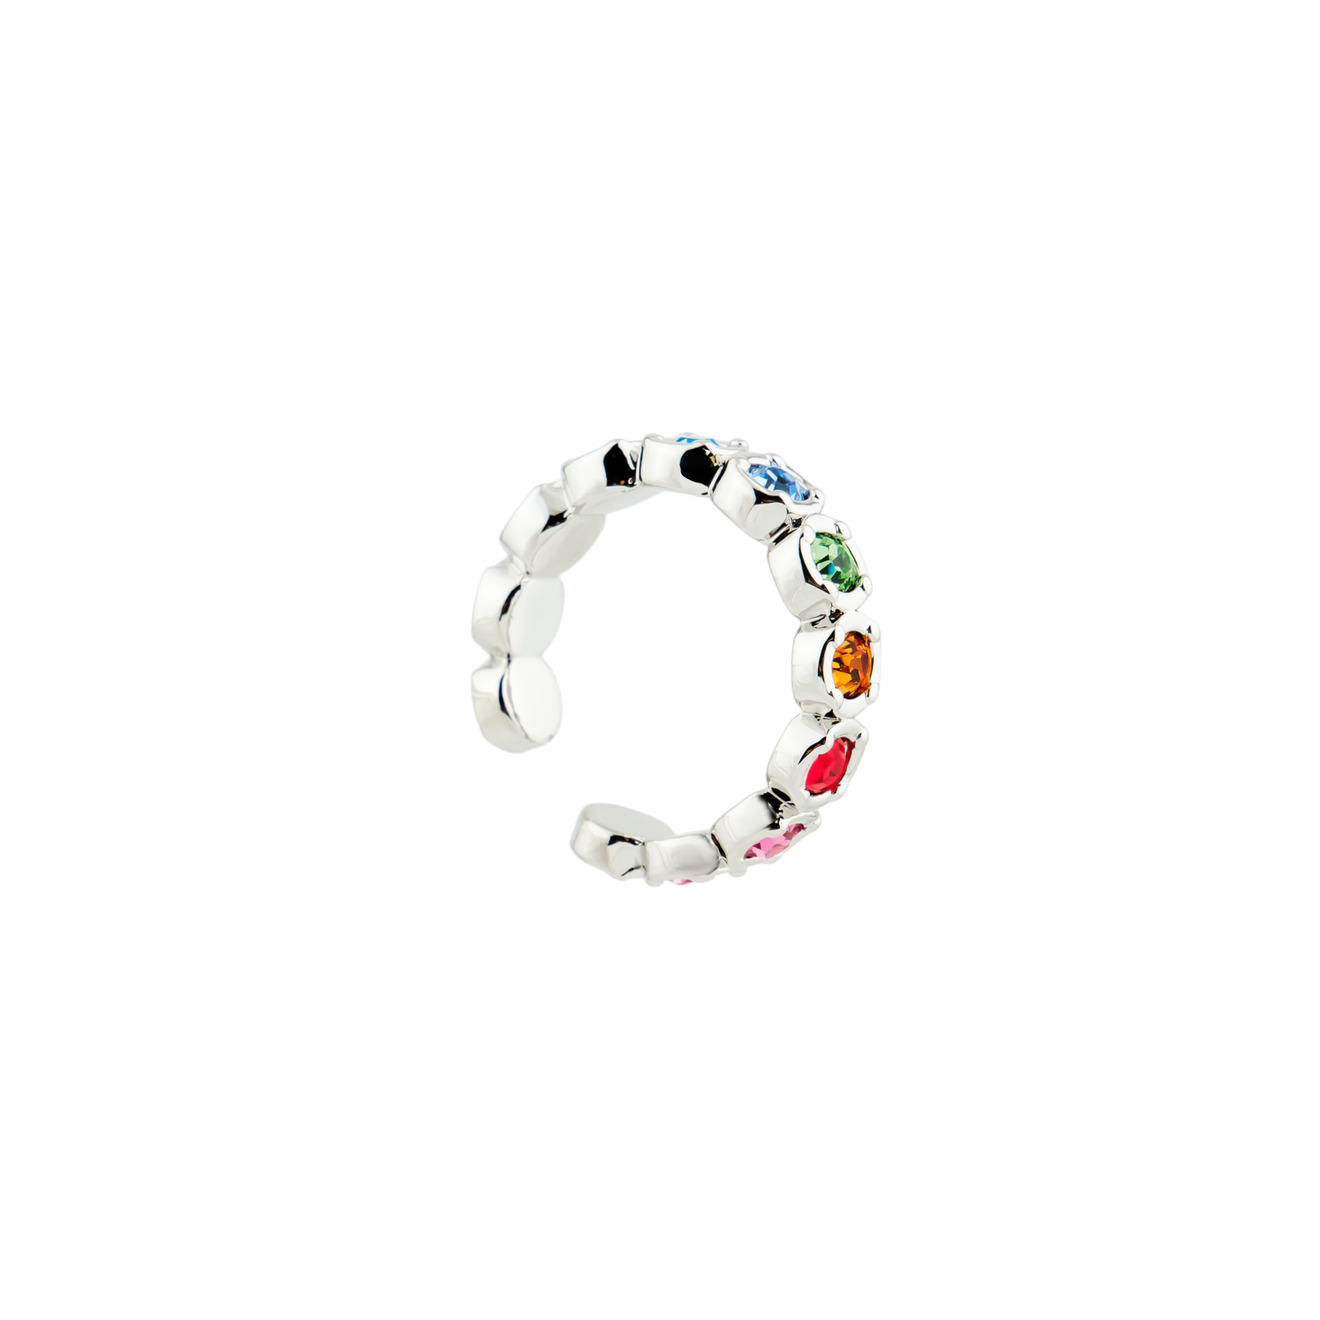 Herald Percy Серебристое кольцо-кафф с разноцветными кристаллами